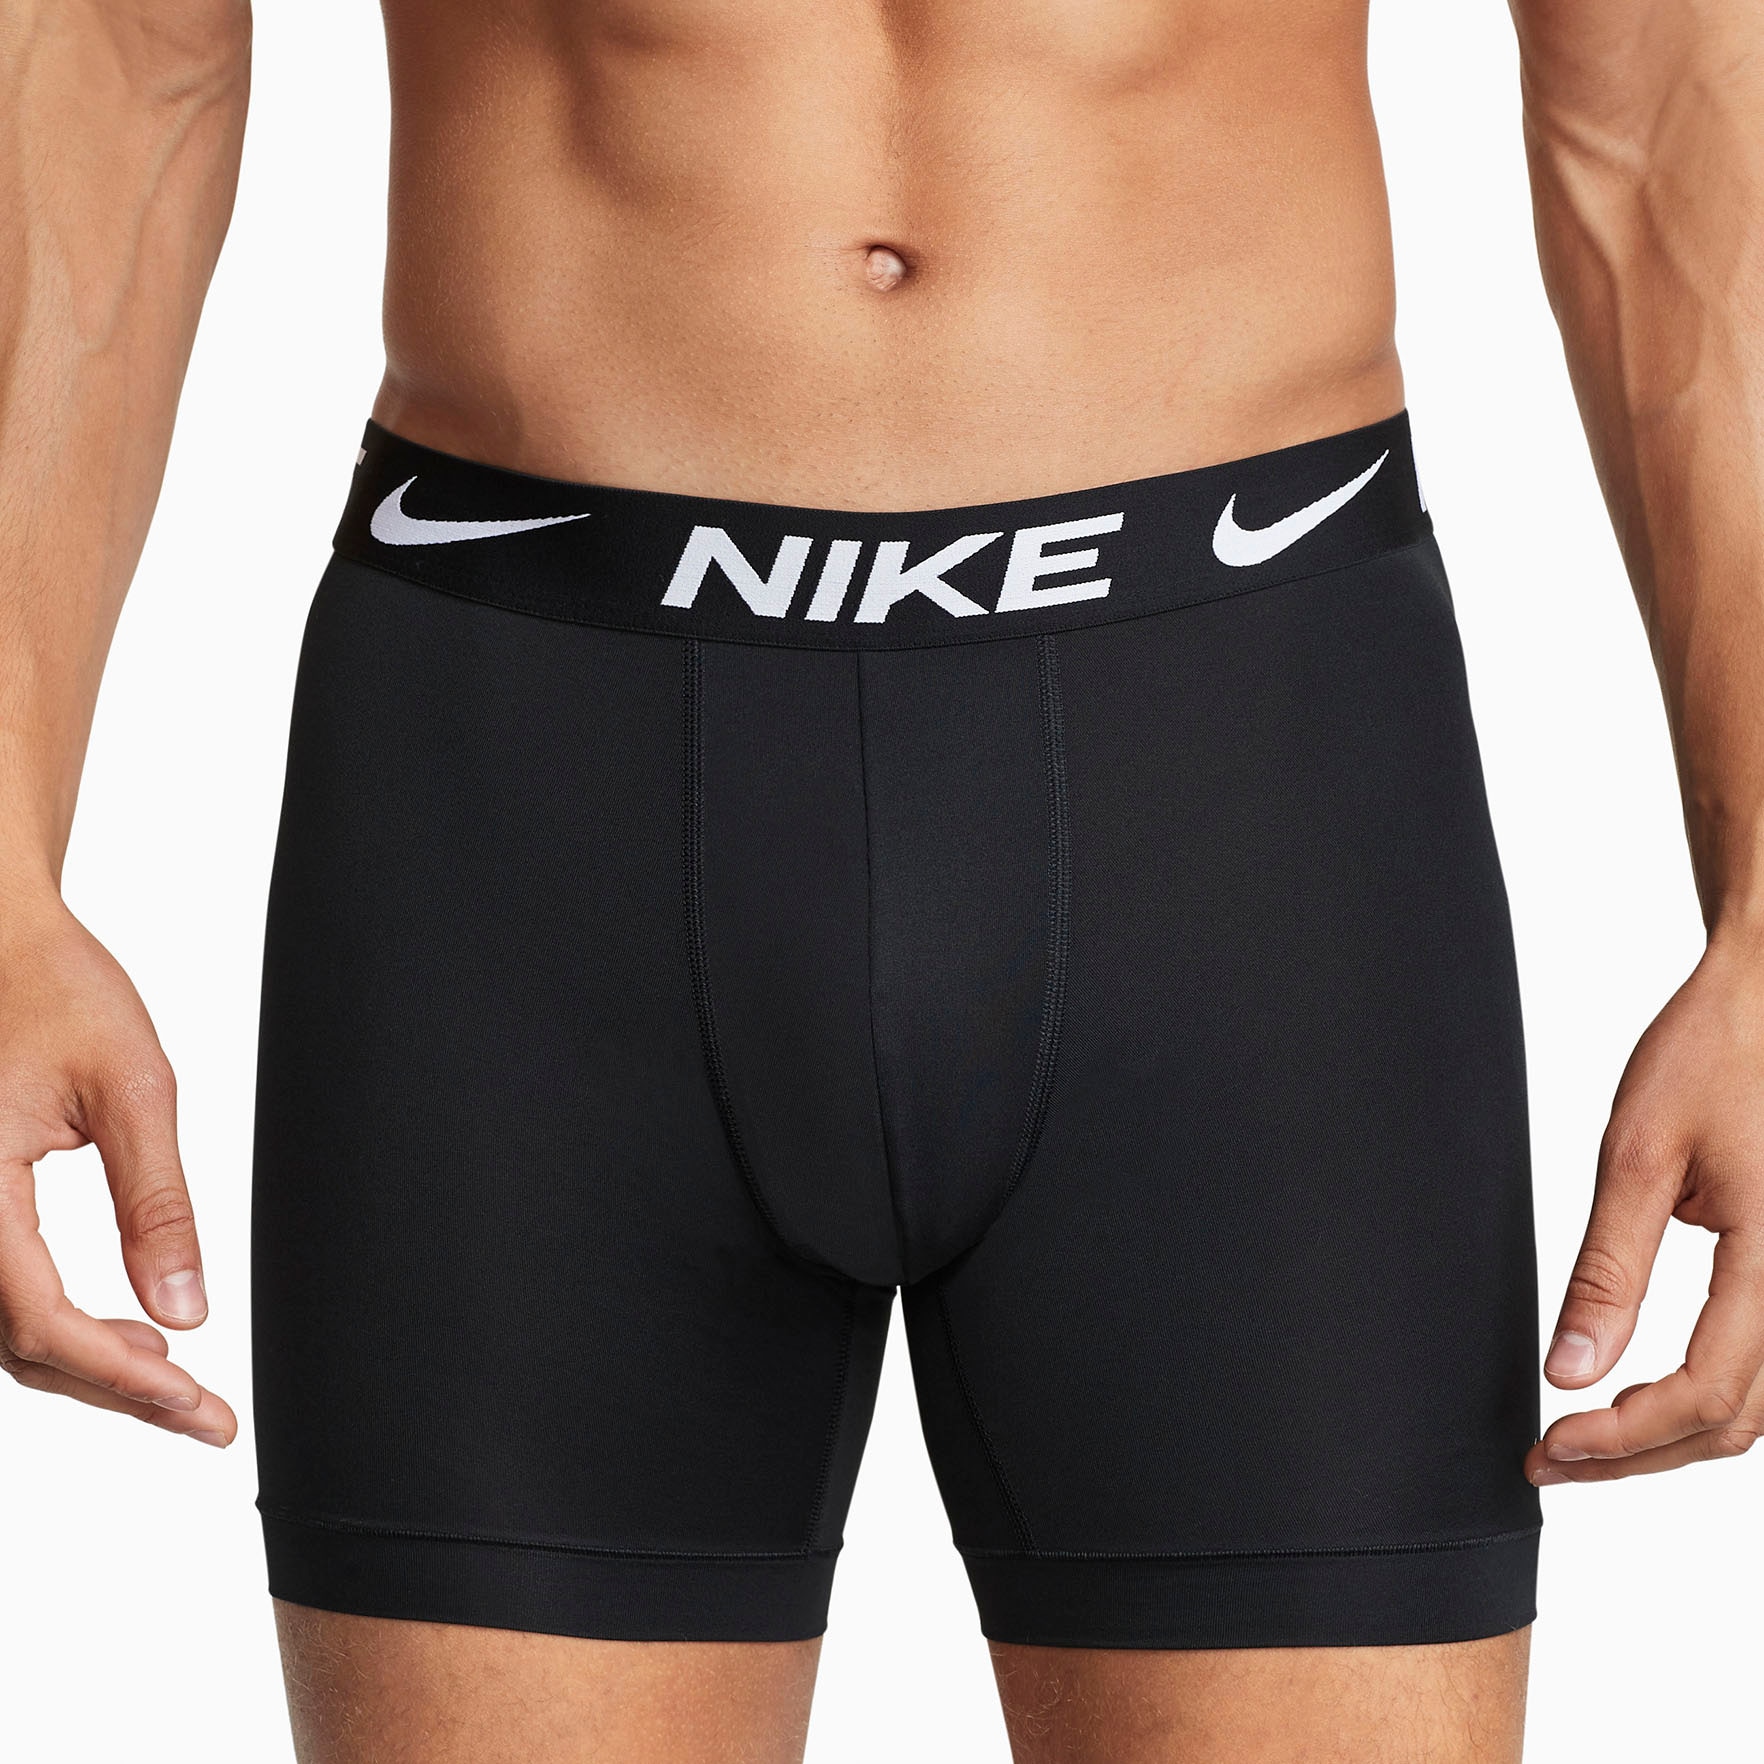 NIKE Underwear Boxer LONG Logo-Schriftzug bei Nike BRIEF »BOXER mit Elastikbund OTTO kaufen (Packung, 3PK«, mit 3er-Pack)